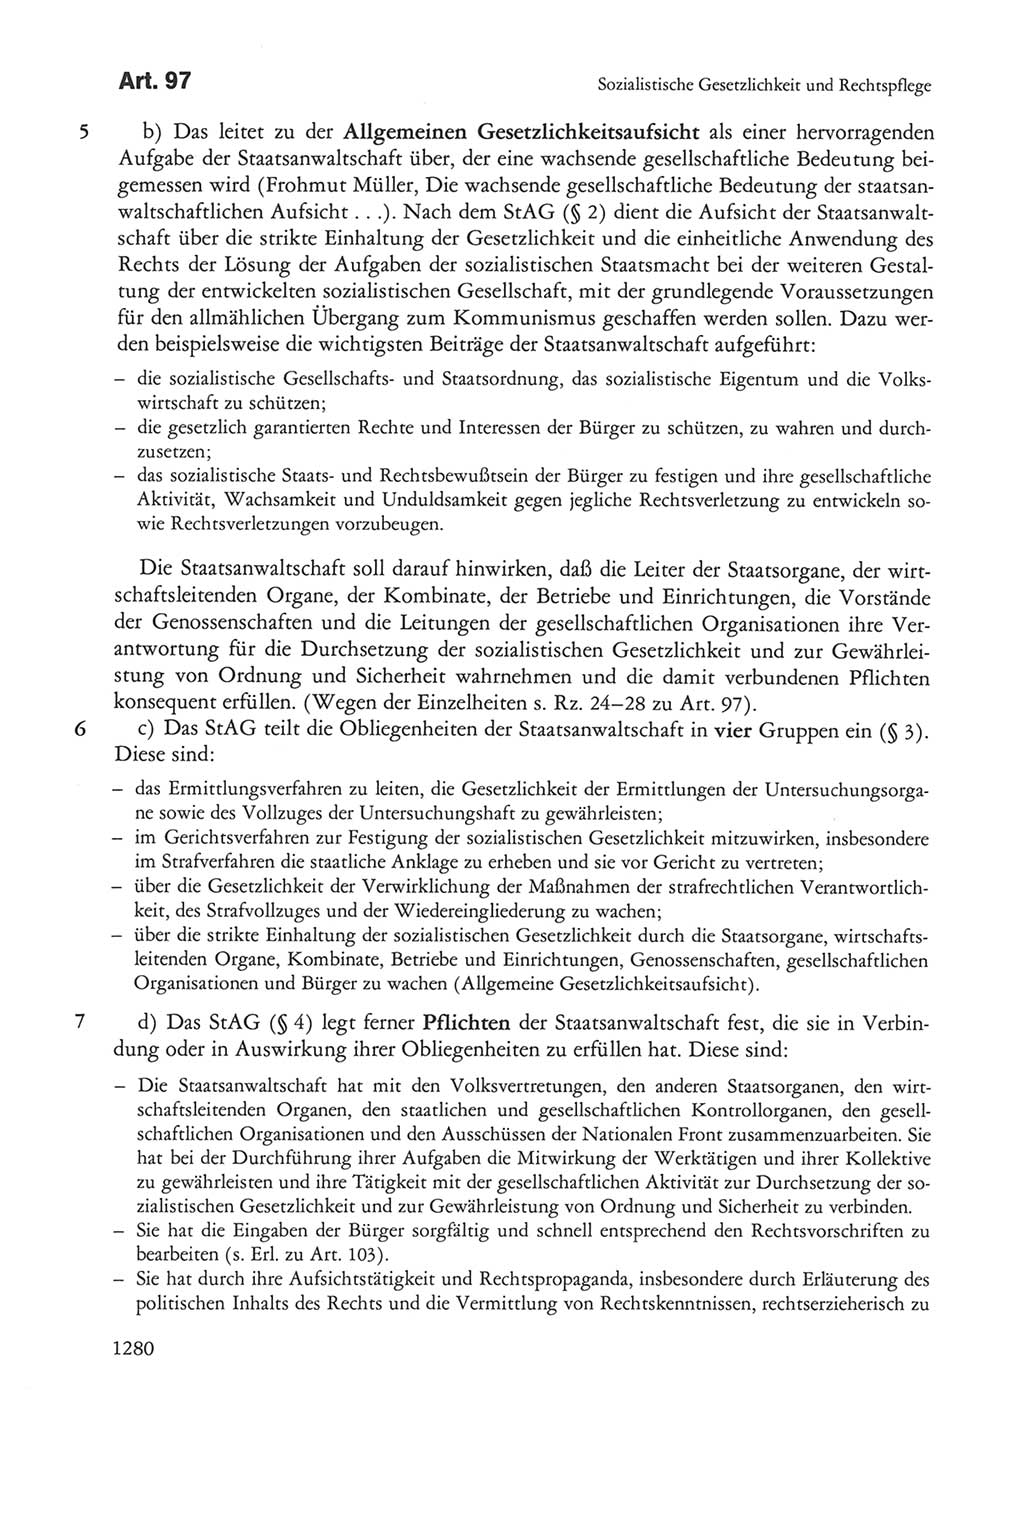 Die sozialistische Verfassung der Deutschen Demokratischen Republik (DDR), Kommentar 1982, Seite 1280 (Soz. Verf. DDR Komm. 1982, S. 1280)